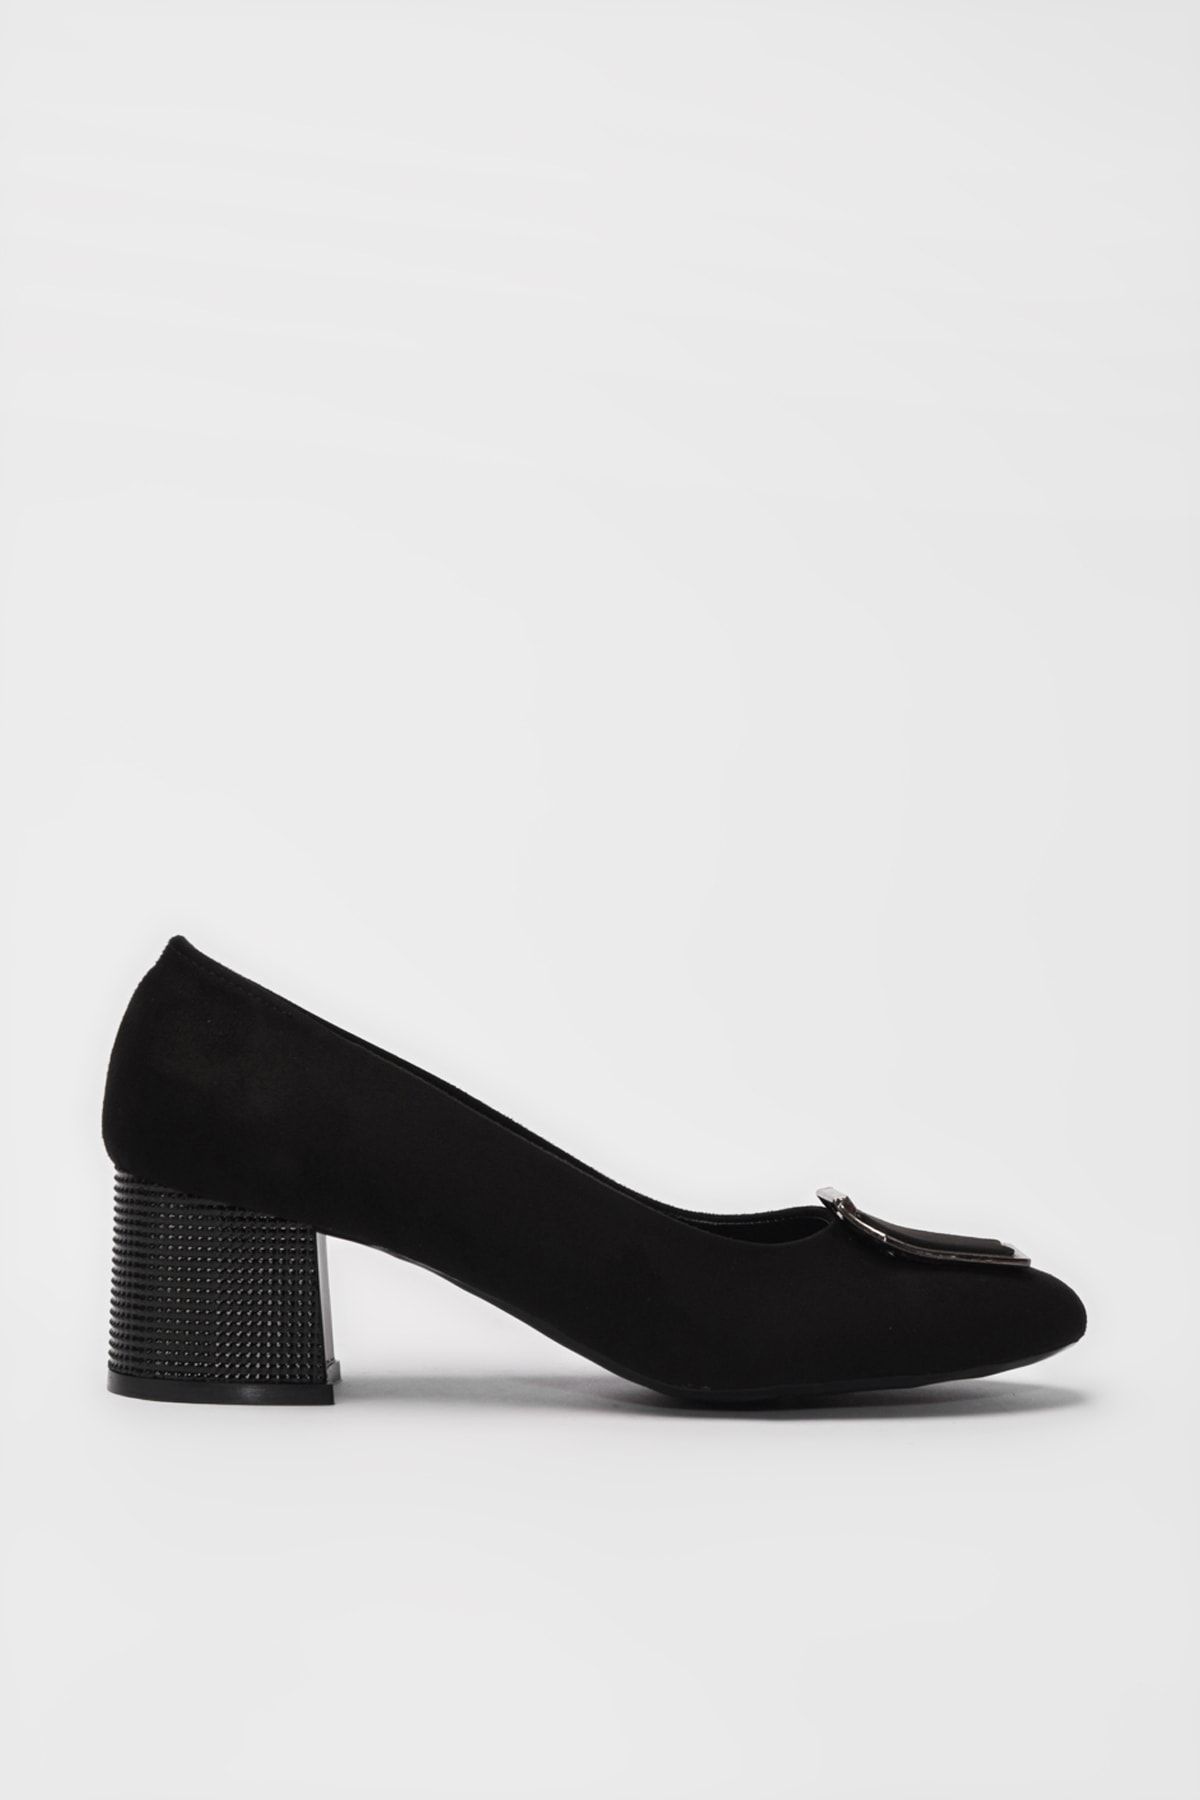 Yaya by Hotiç Siyah Kadın Klasik Topuklu Ayakkabı 01AYY188110A100